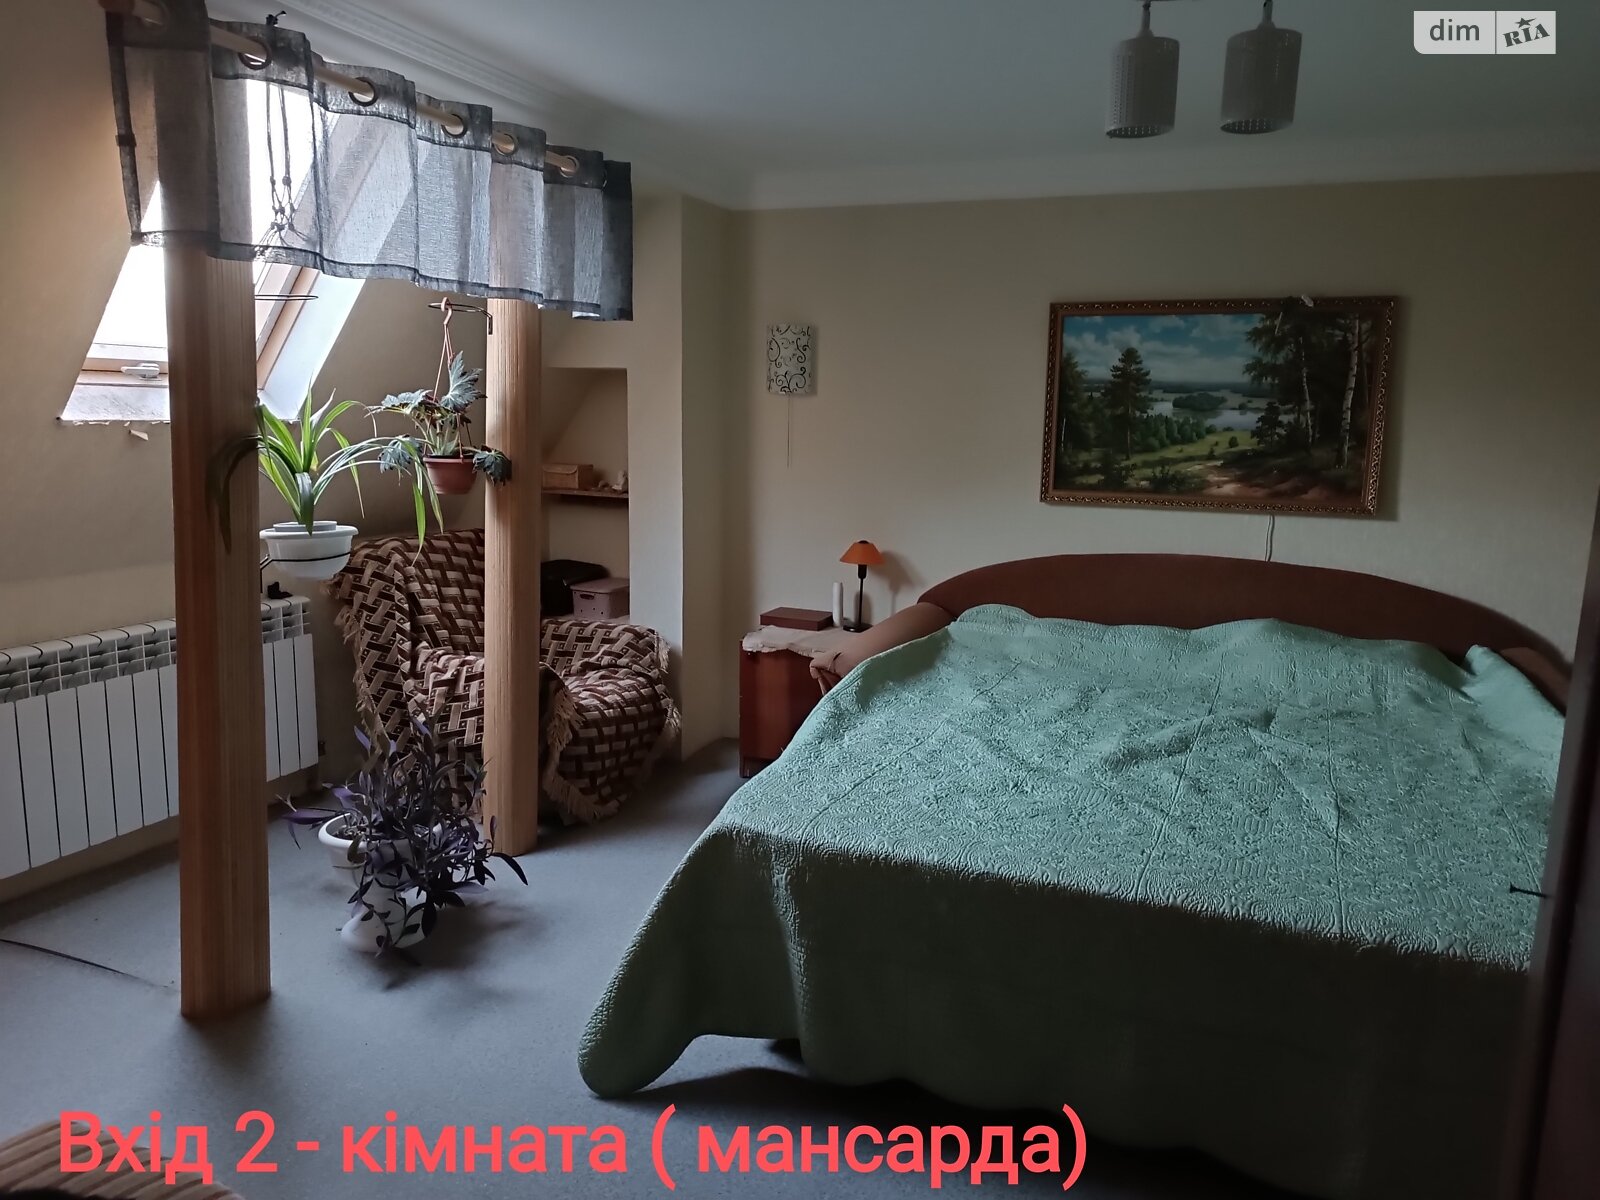 Продажа части дома в Киеве, район Дарницкий, 5 комнат фото 1